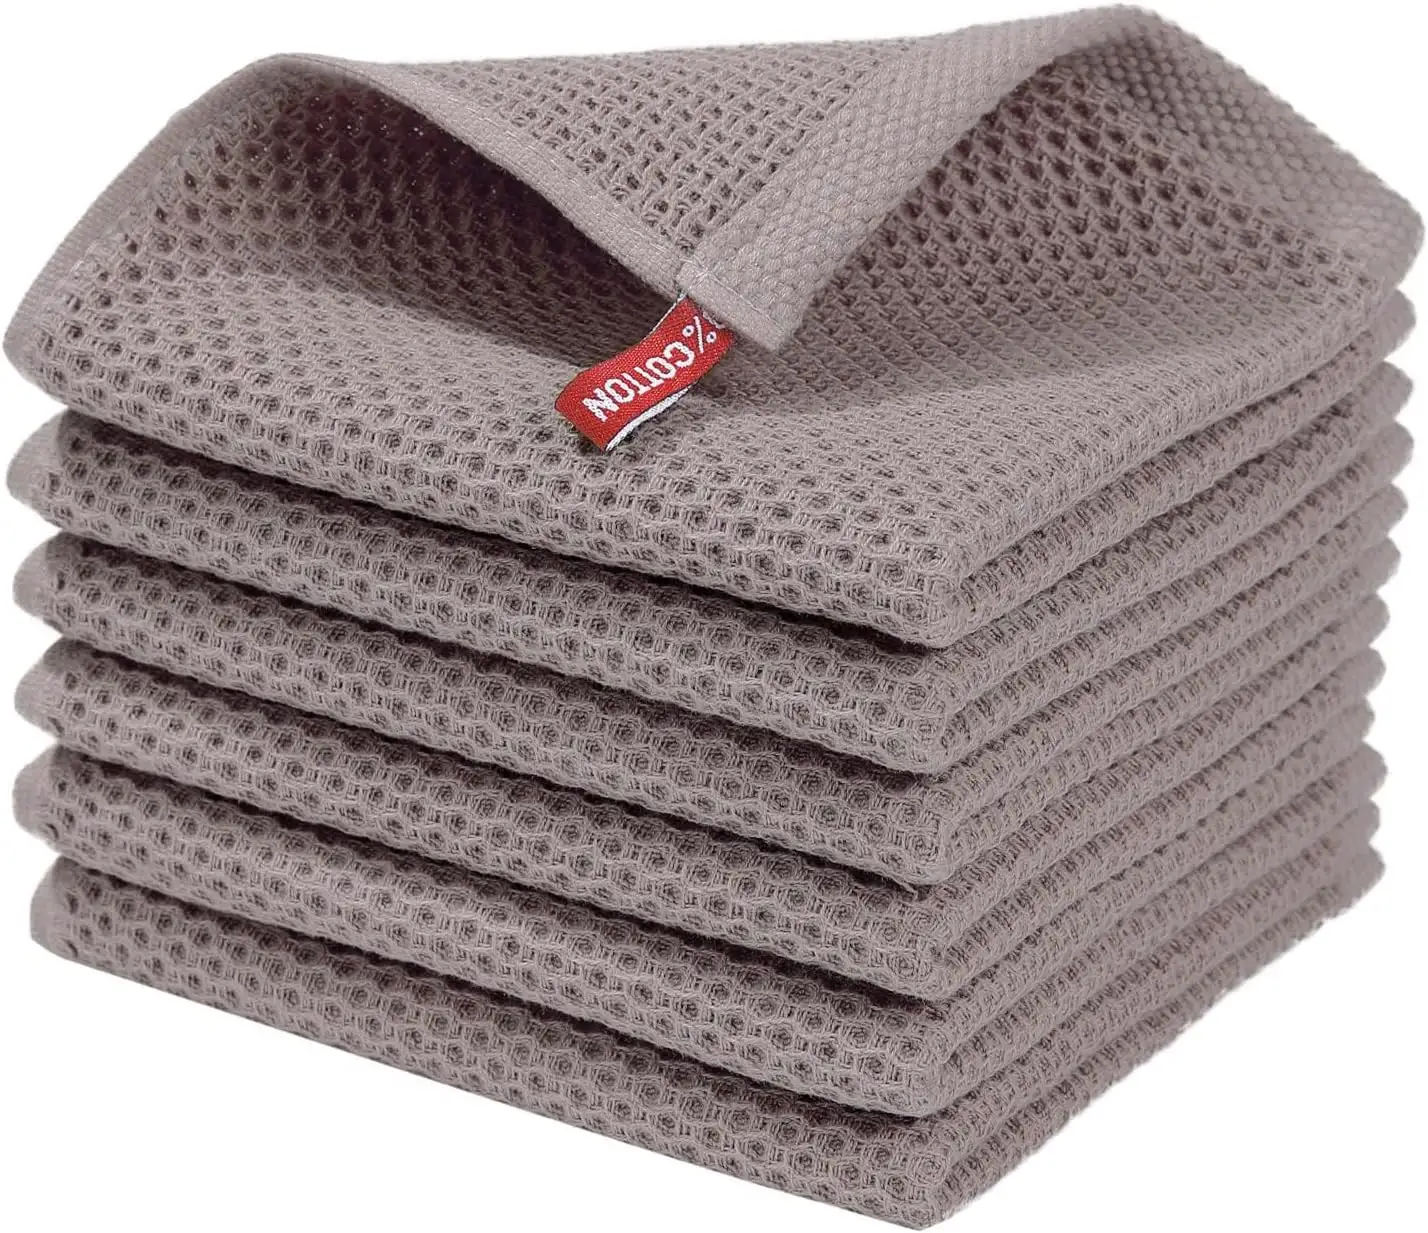 Logo personalizzato riutilizzabile in cotone lavabile waffle weave asciugamano da cucina panni per la pulizia dei piatti asciugamani in cotone 100%